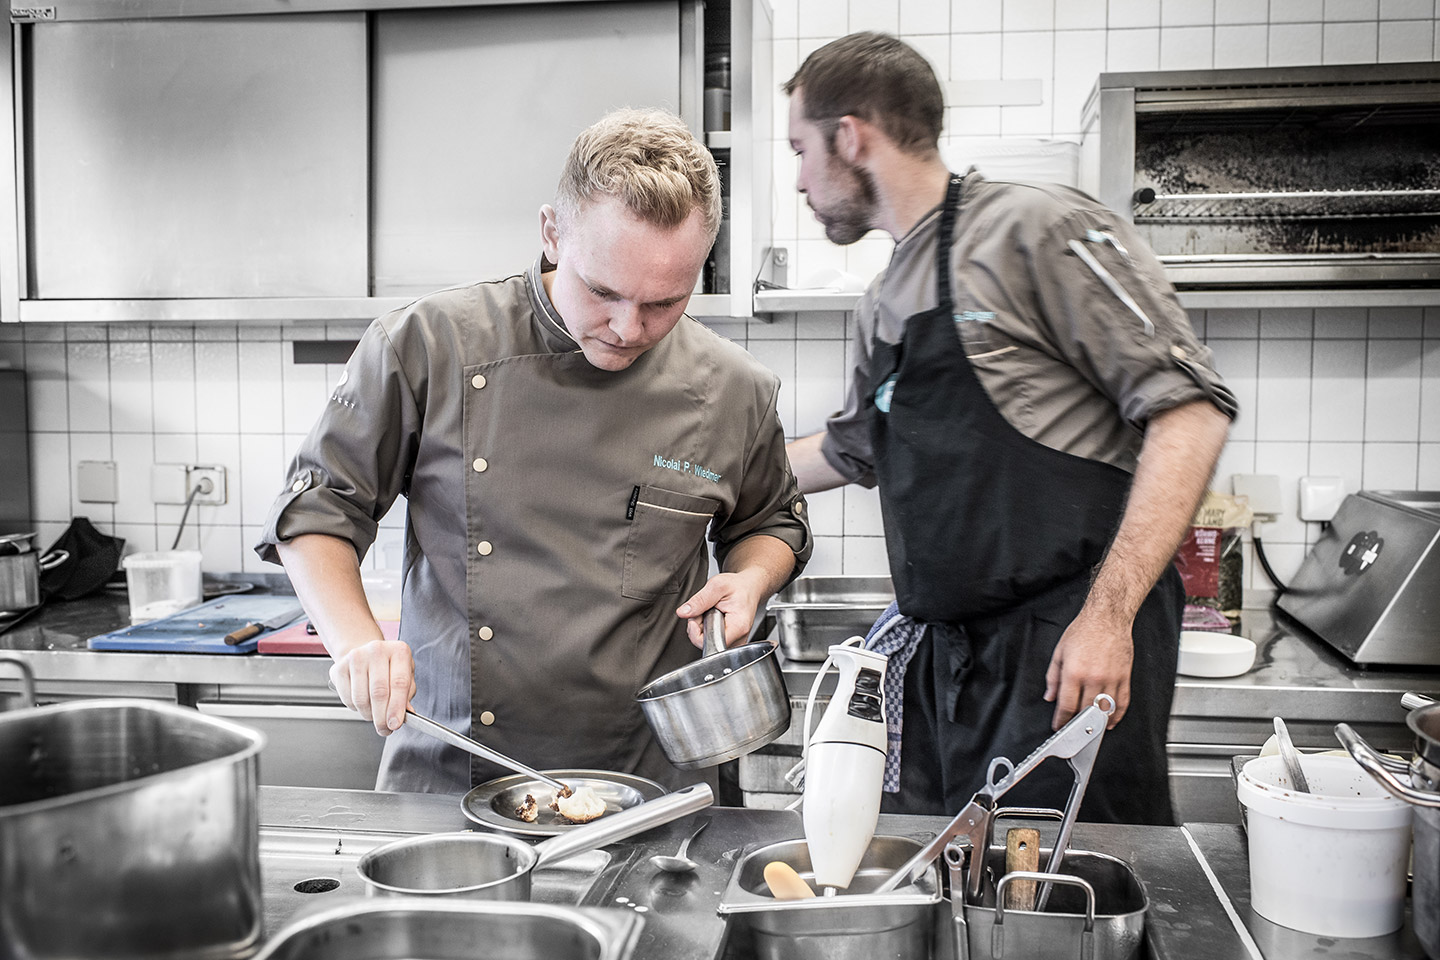 Nicolai P. Wiedmer, Küchenchef im Restaurant Eckert, ist einer der jüngsten Sterneköche. Ein Interview.